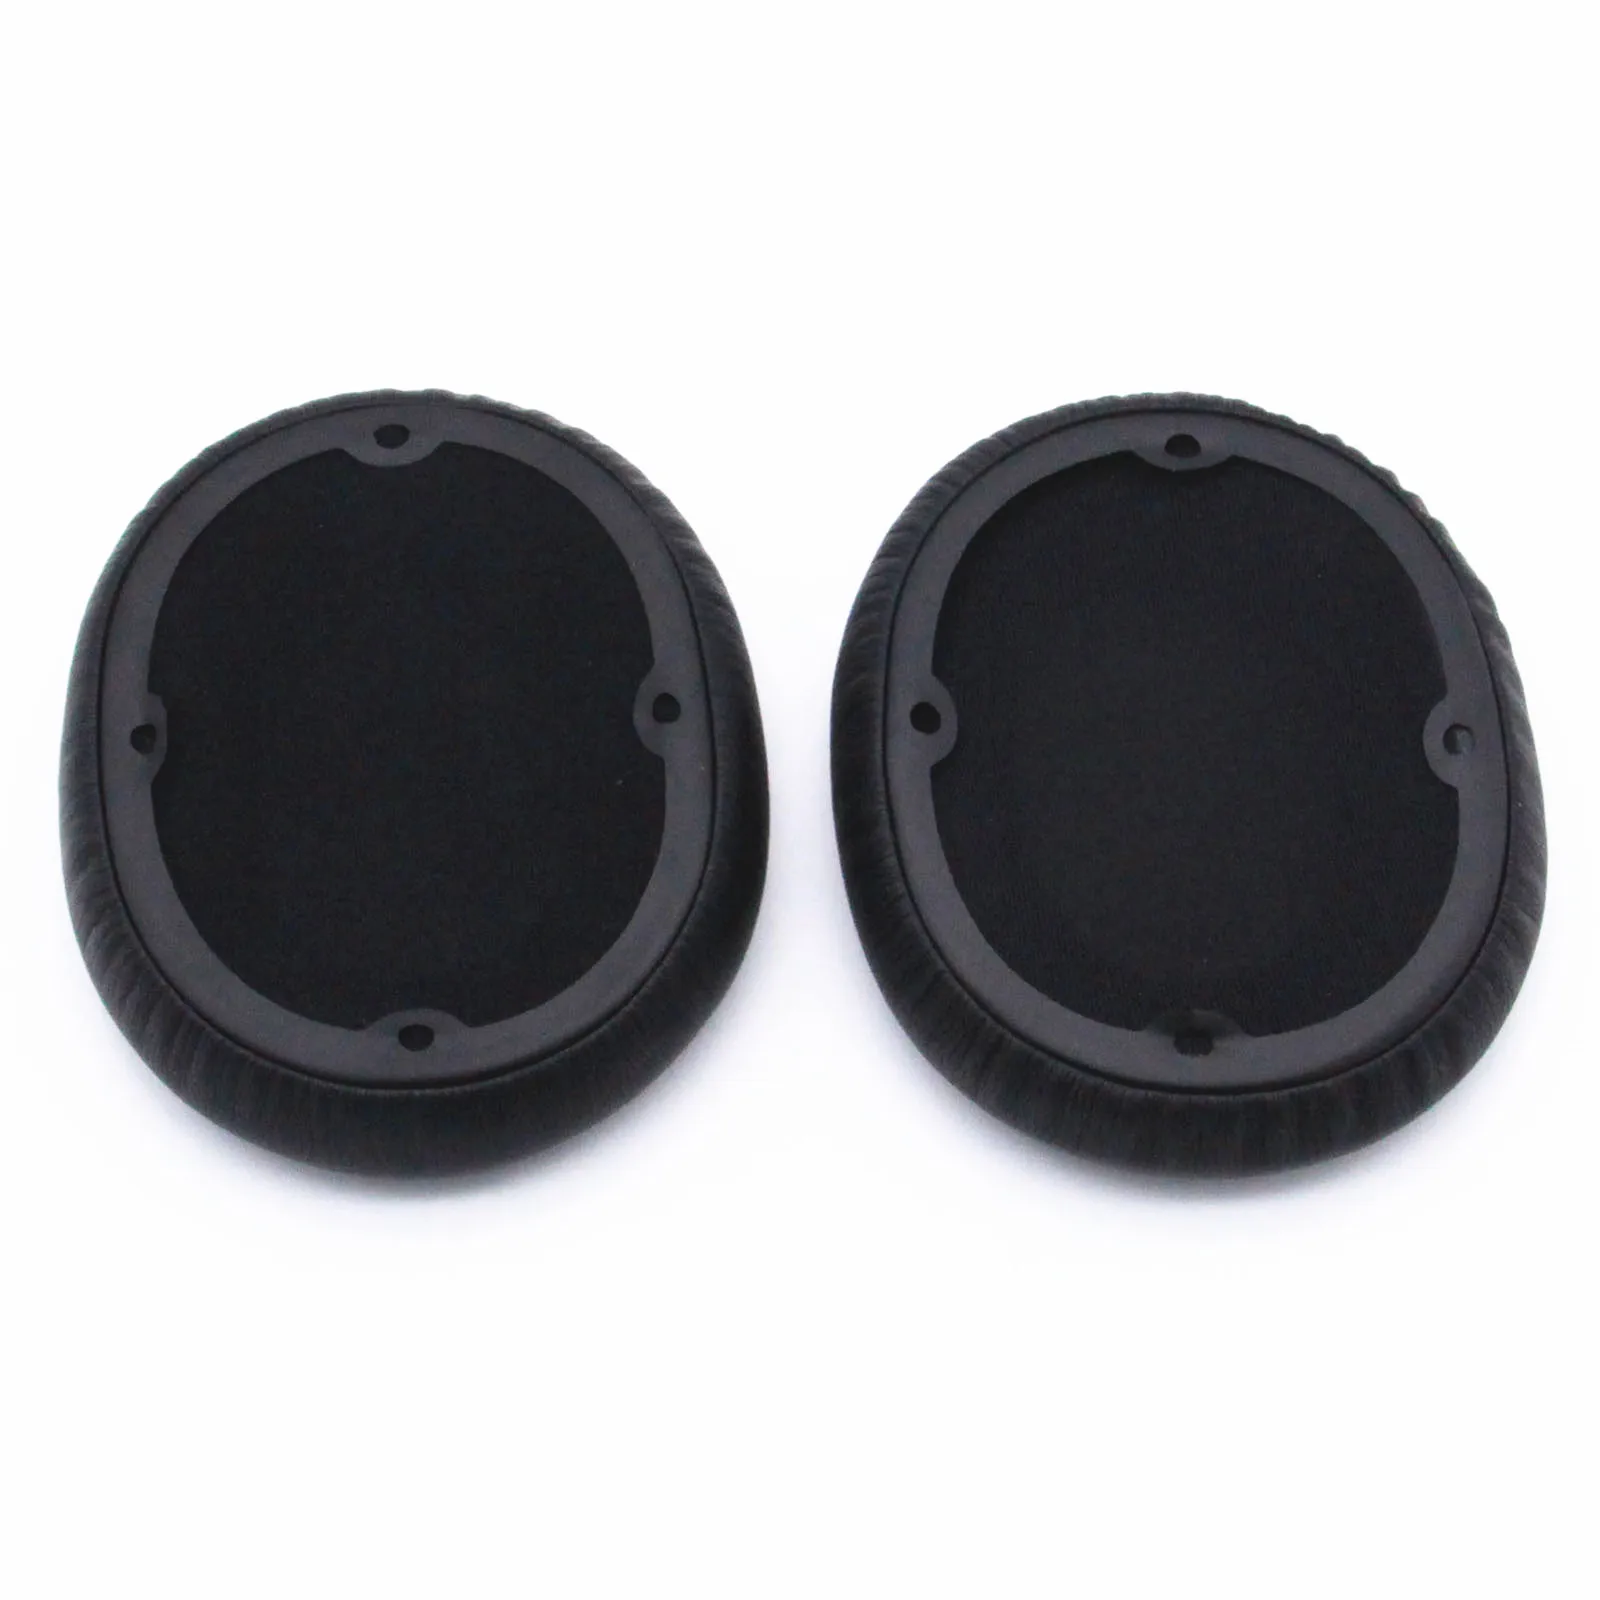 Replacement Earpads Ear Pad Cushion Foam for Edifier W830BT W860NB W830 BT W860 NB Headphones Earmuff enlarge